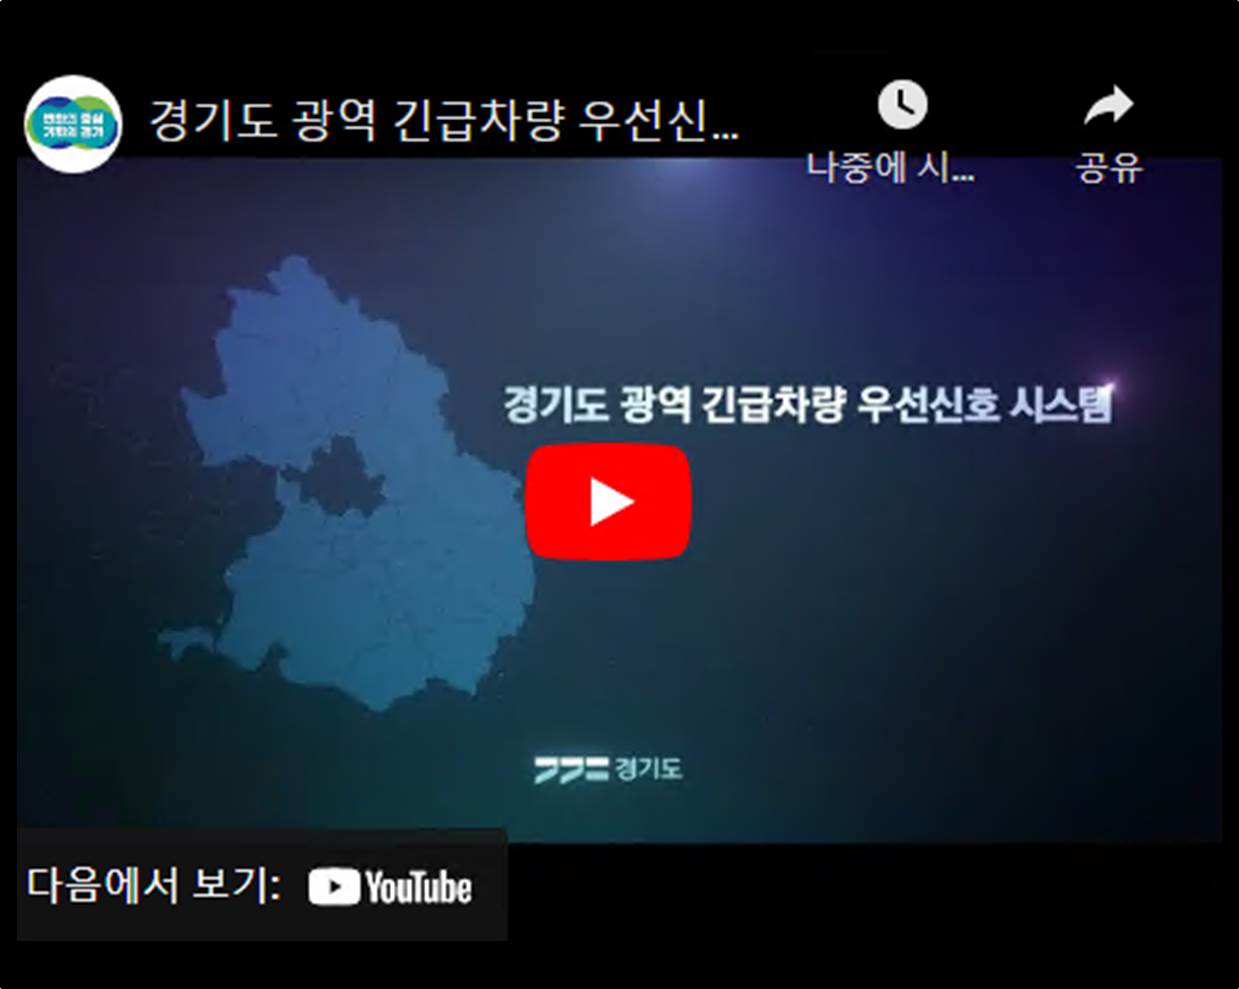 경기도 광역 긴급차량 우선신호 시스템 홍보 동영상